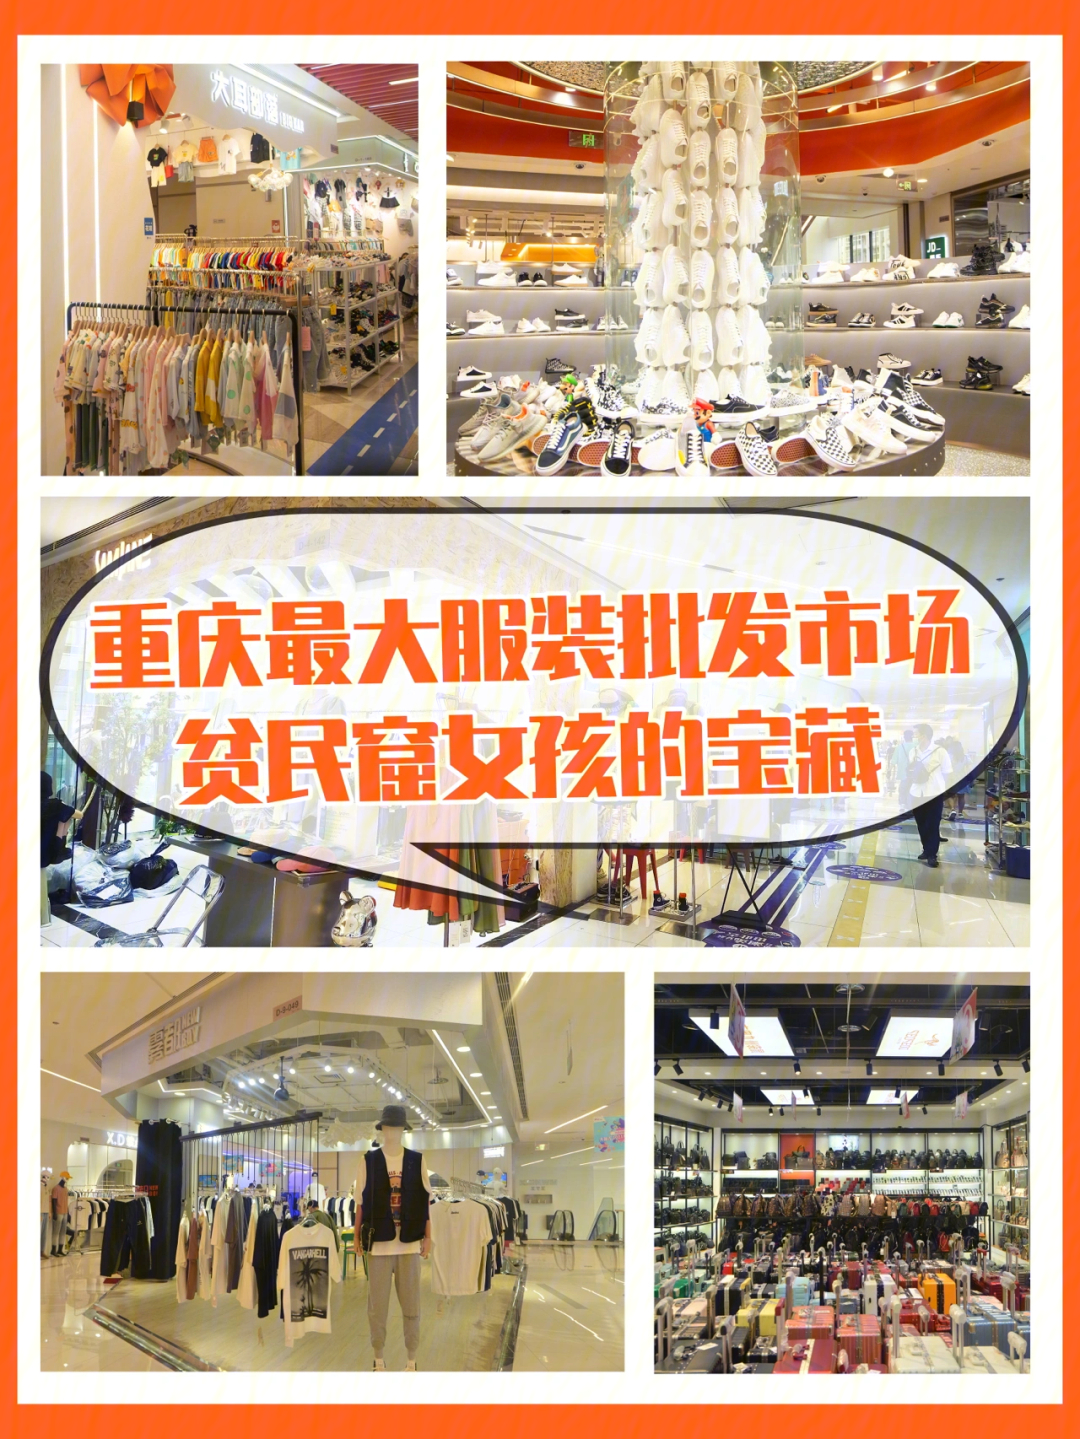 今天给大家安利位于重庆市中心朝天门,13层商场,总面积高达17万方重庆